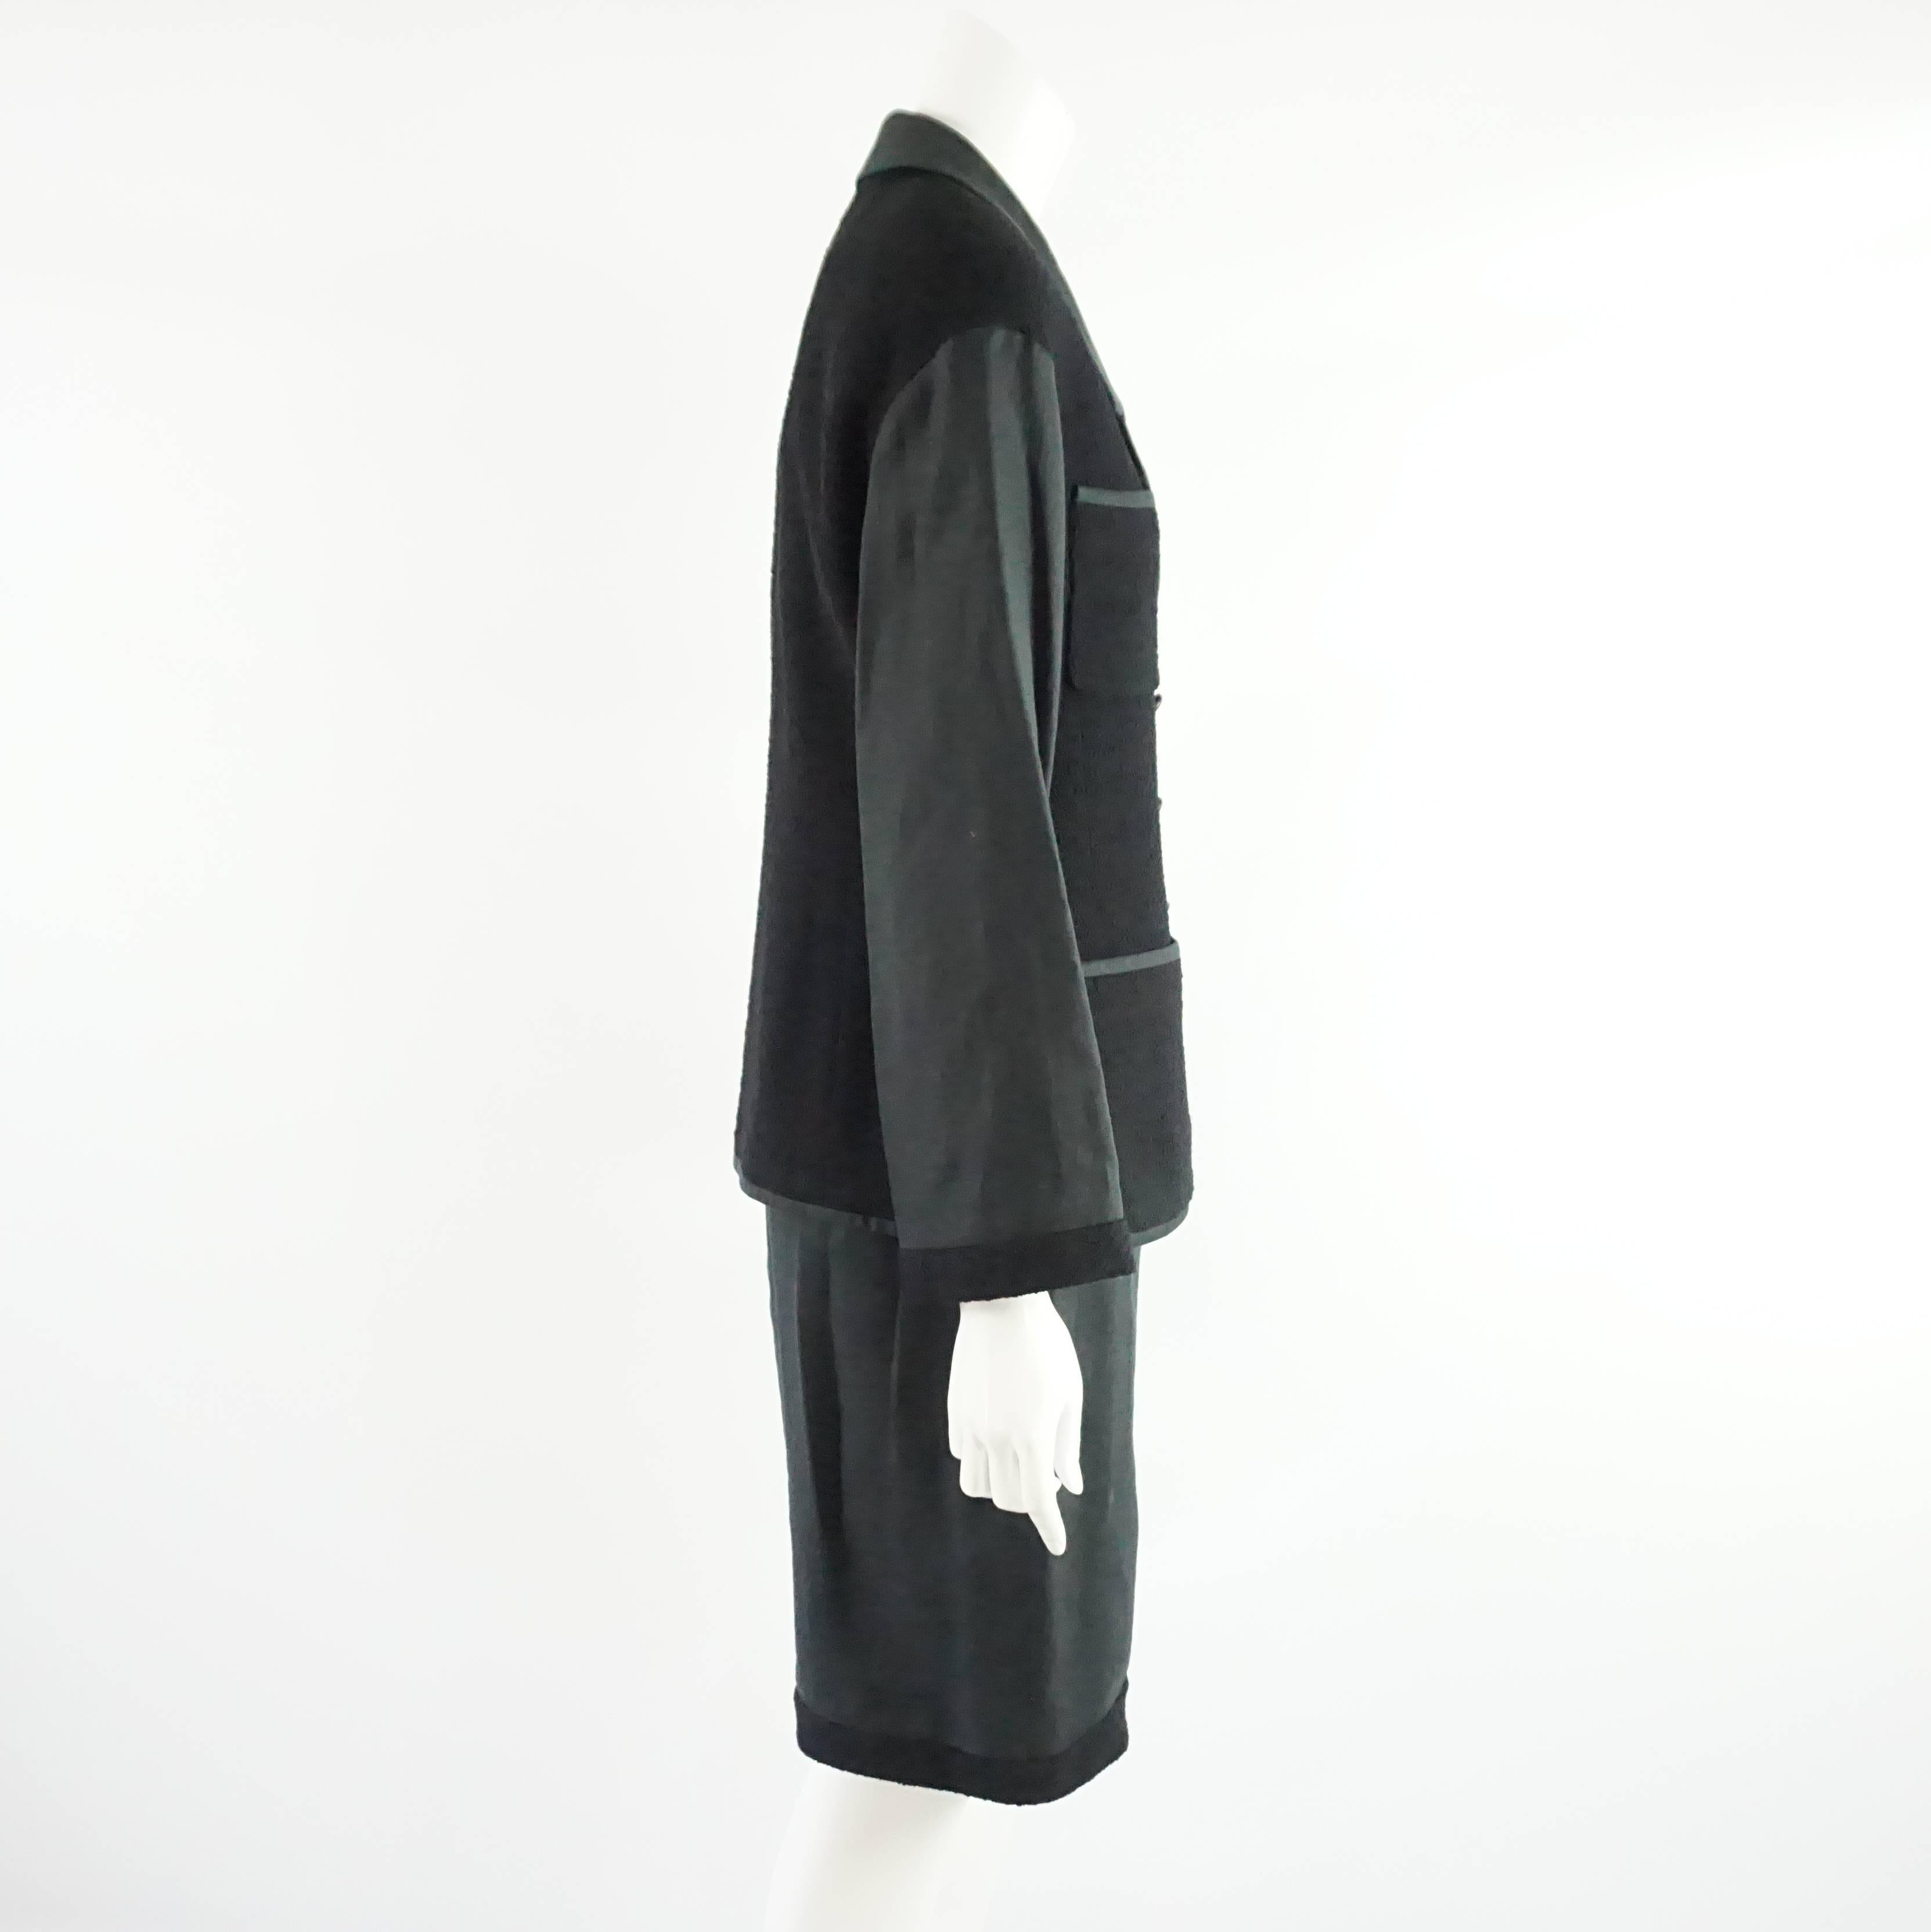 Chanel Combinaison jupe croisée en lin et laine noire - 40 - Printemps 1994. Ce tailleur jupe vintage a une jupe en lin, et la veste est une combinaison de lin et de laine. La veste comporte 8 boutons noirs et dorés sur le devant de la veste et 4